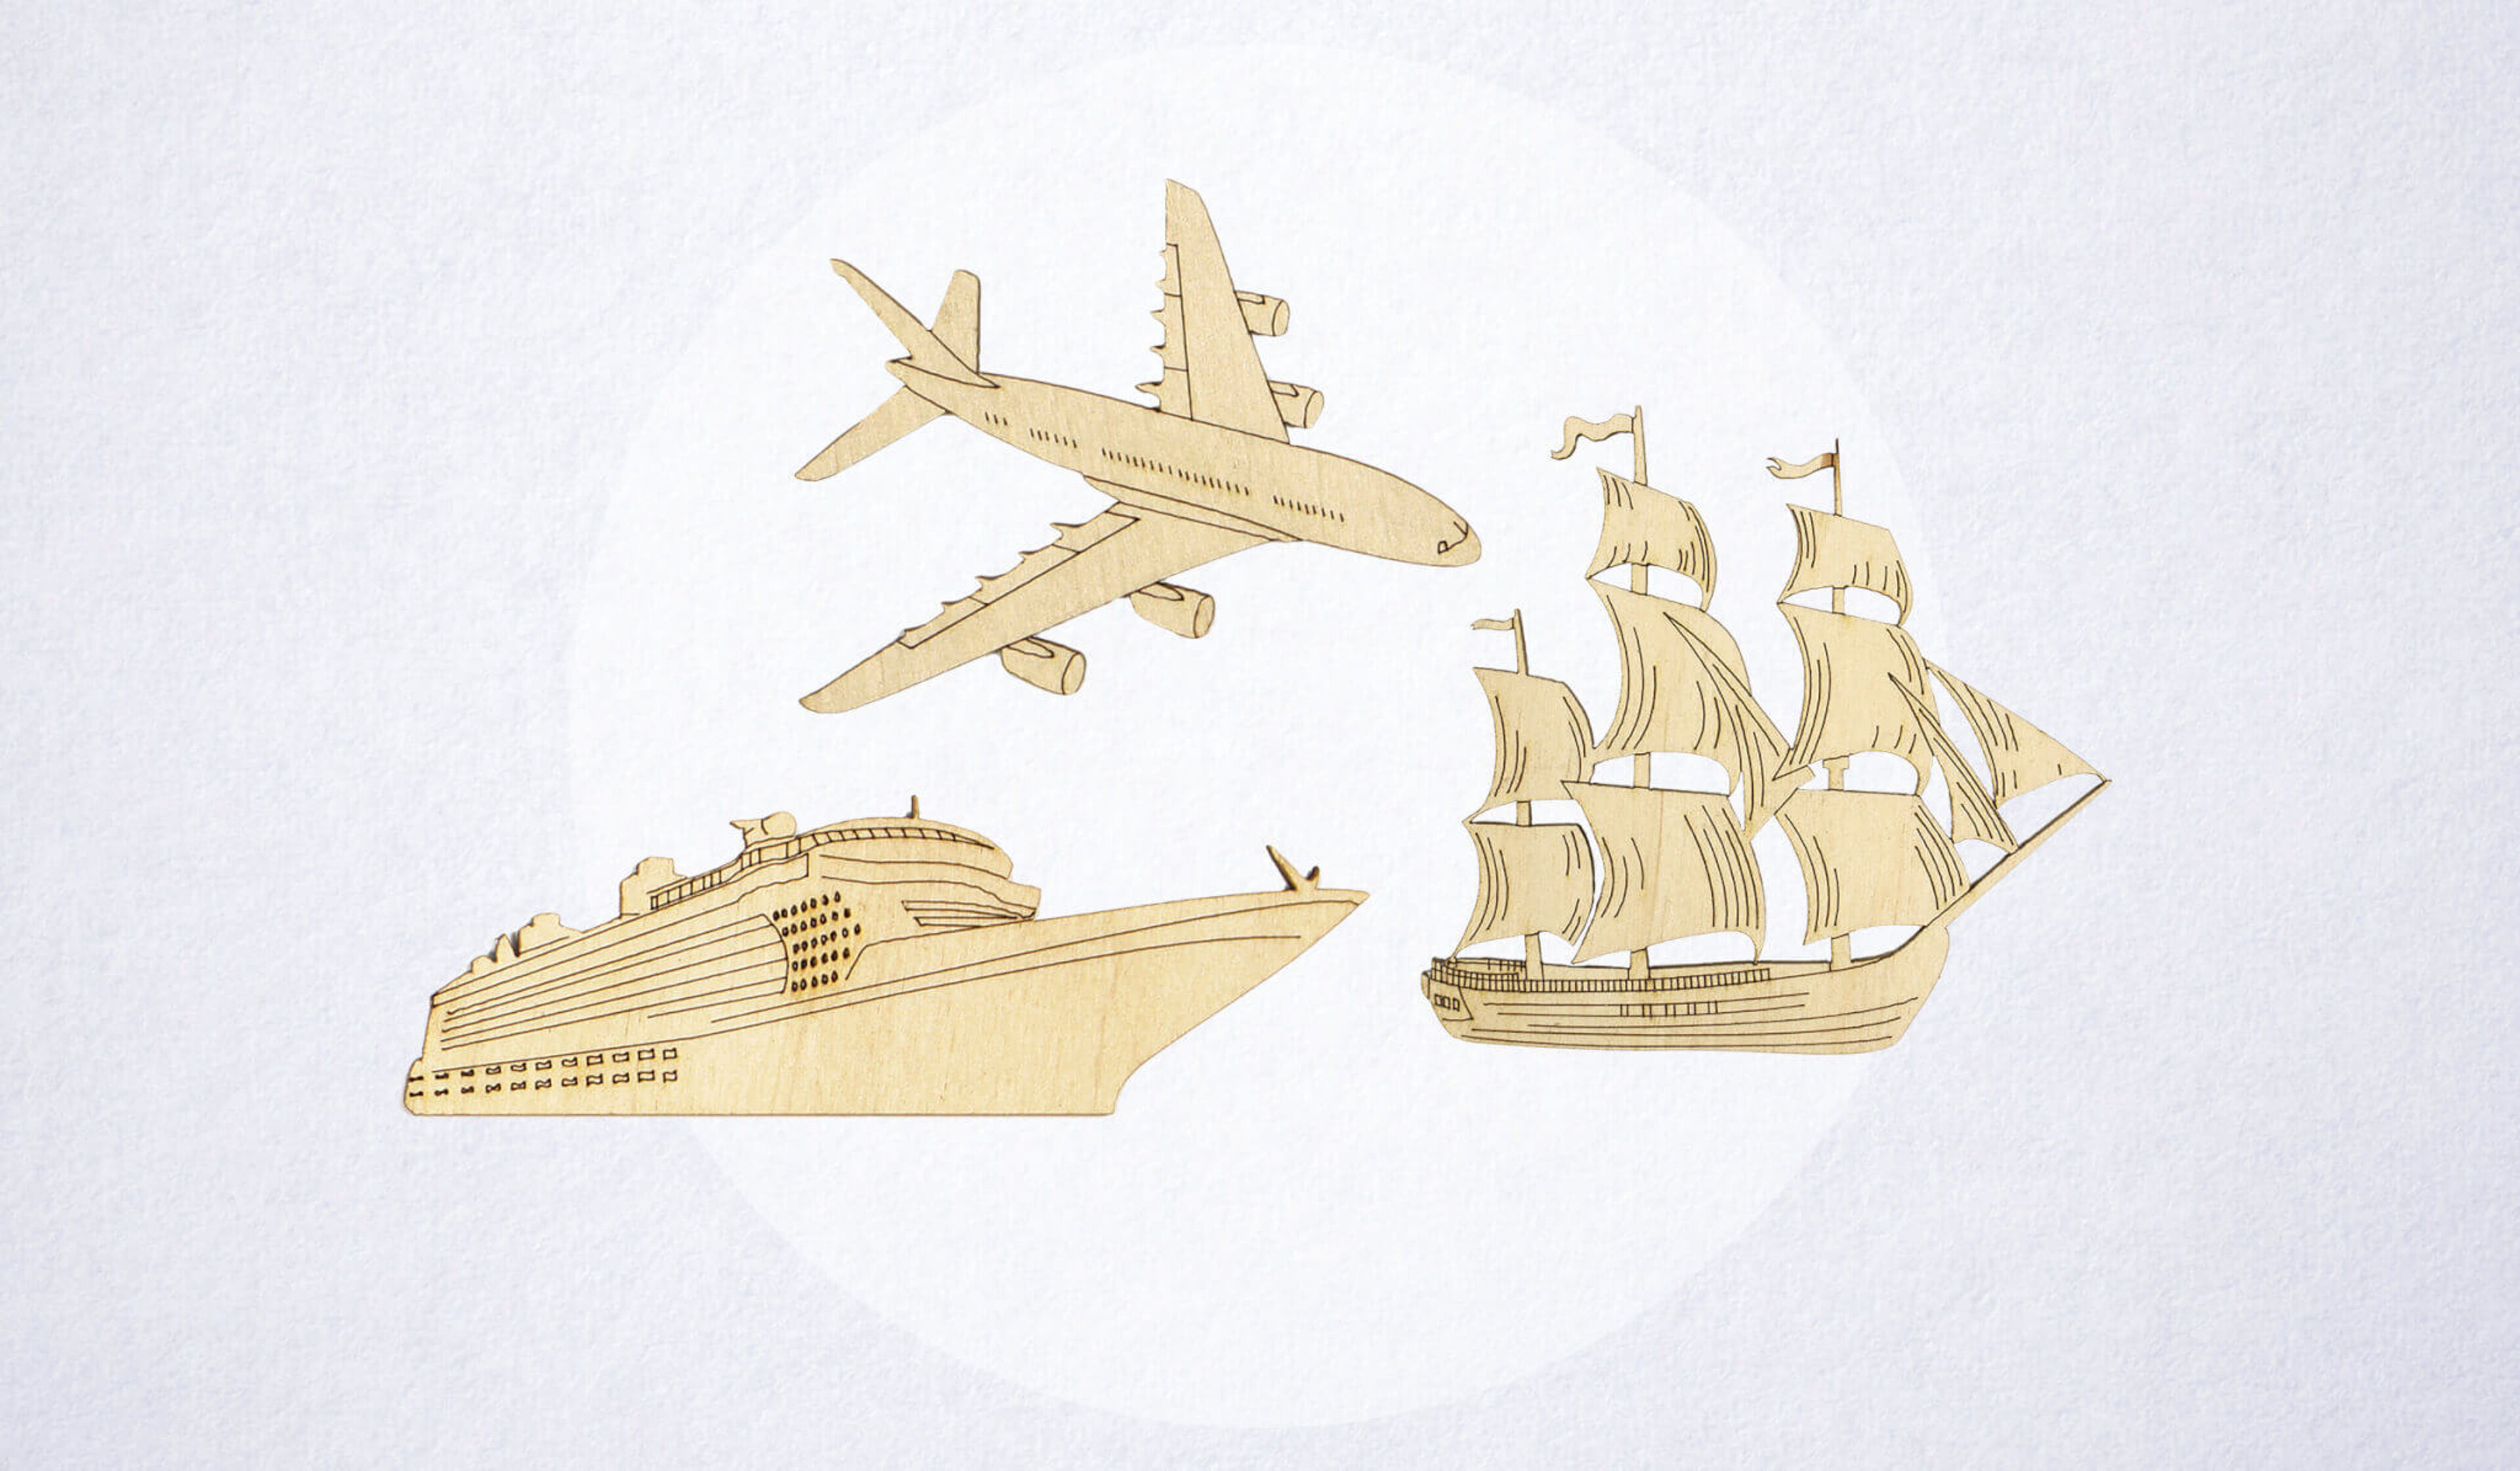 Holzboote, Segelboote und Flugzeuge